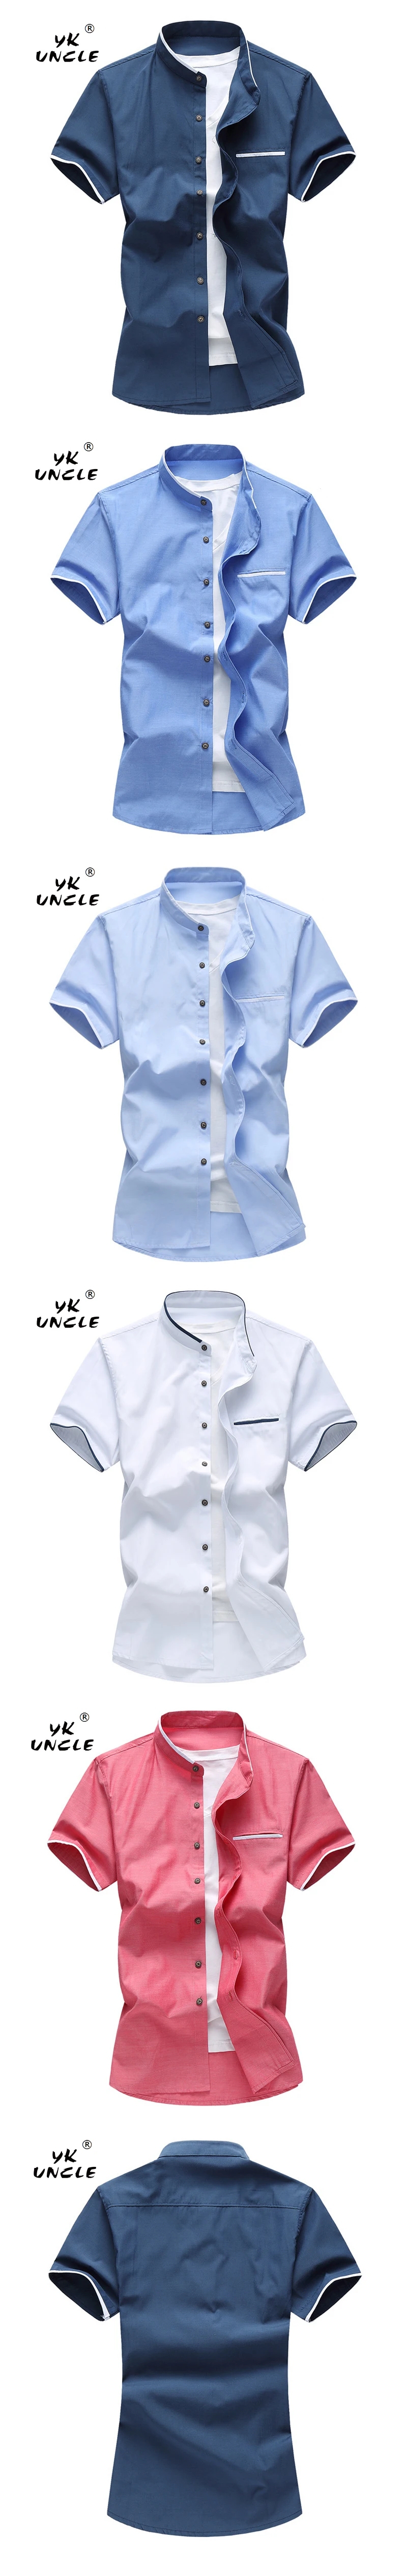 YK дядя бренд Для мужчин рубашка Новый 2018 Стенд воротник Повседневное Мужской рубашка Slim Fit Для мужчин S рубашки короткий рукав Camisa Hombre